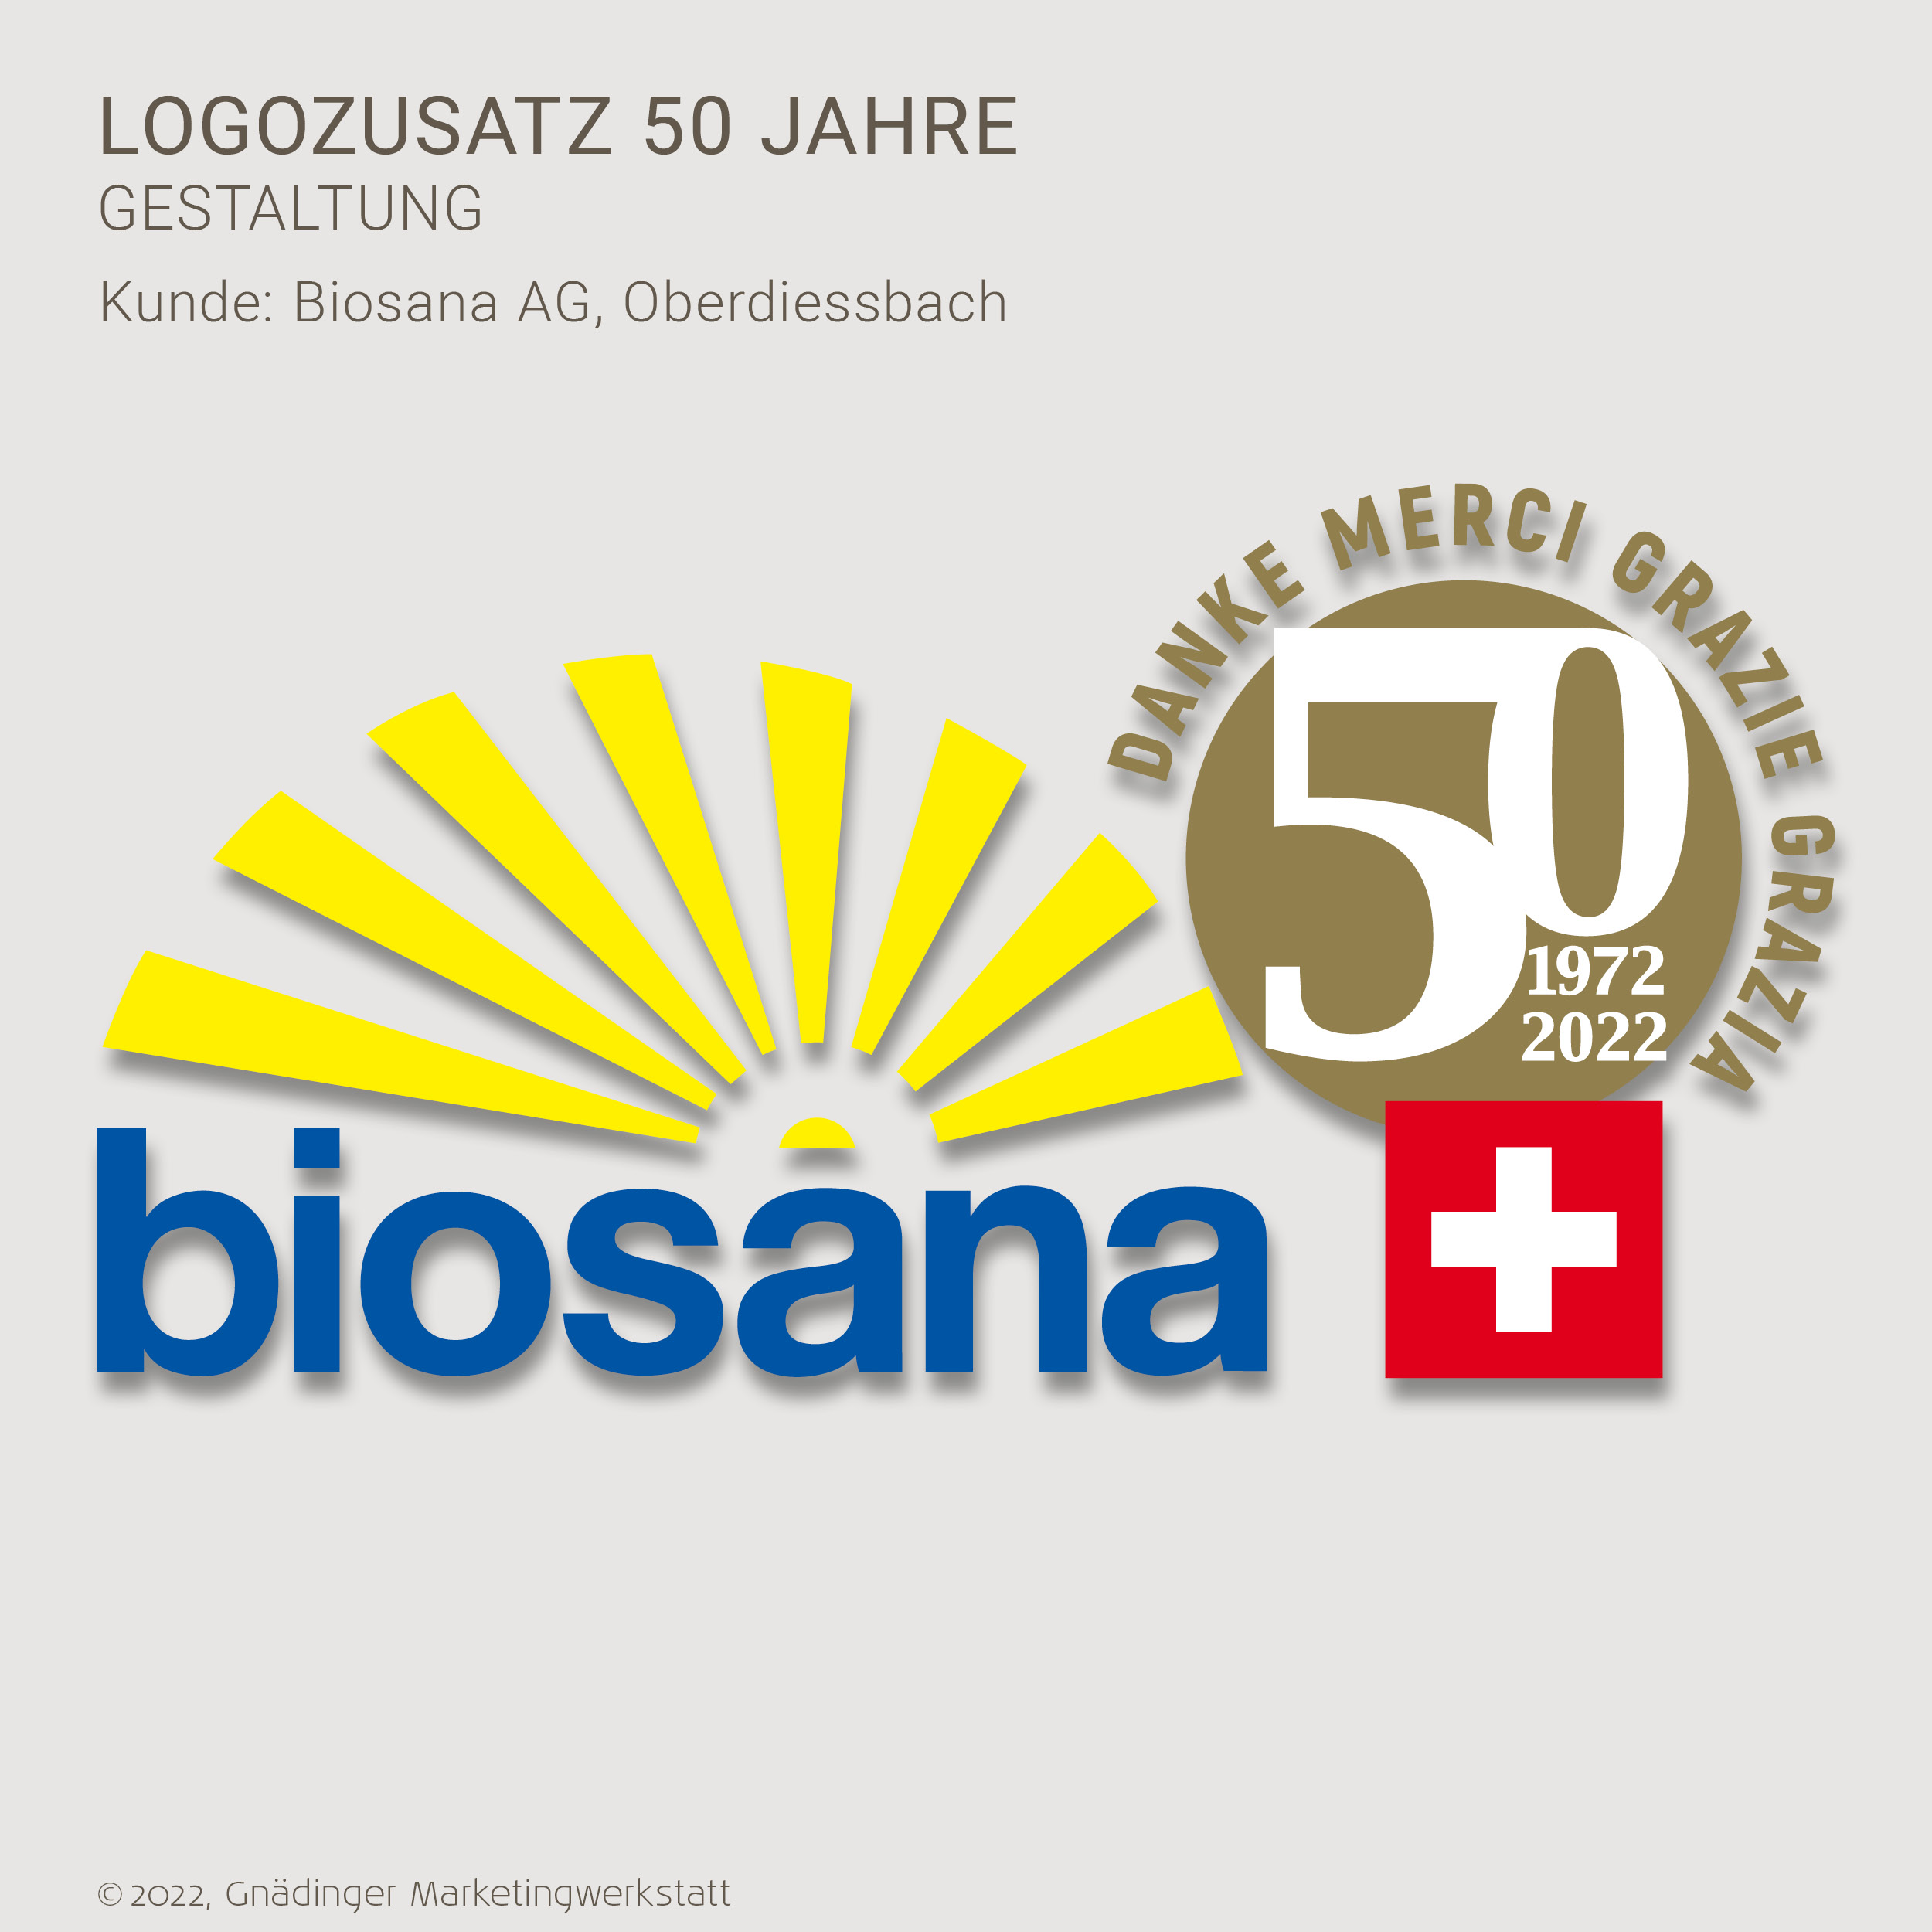 WEB1_GMW_Projekt_Biosana_Logozusatz-50Jahre__05-2022_1200x1200px_RGB